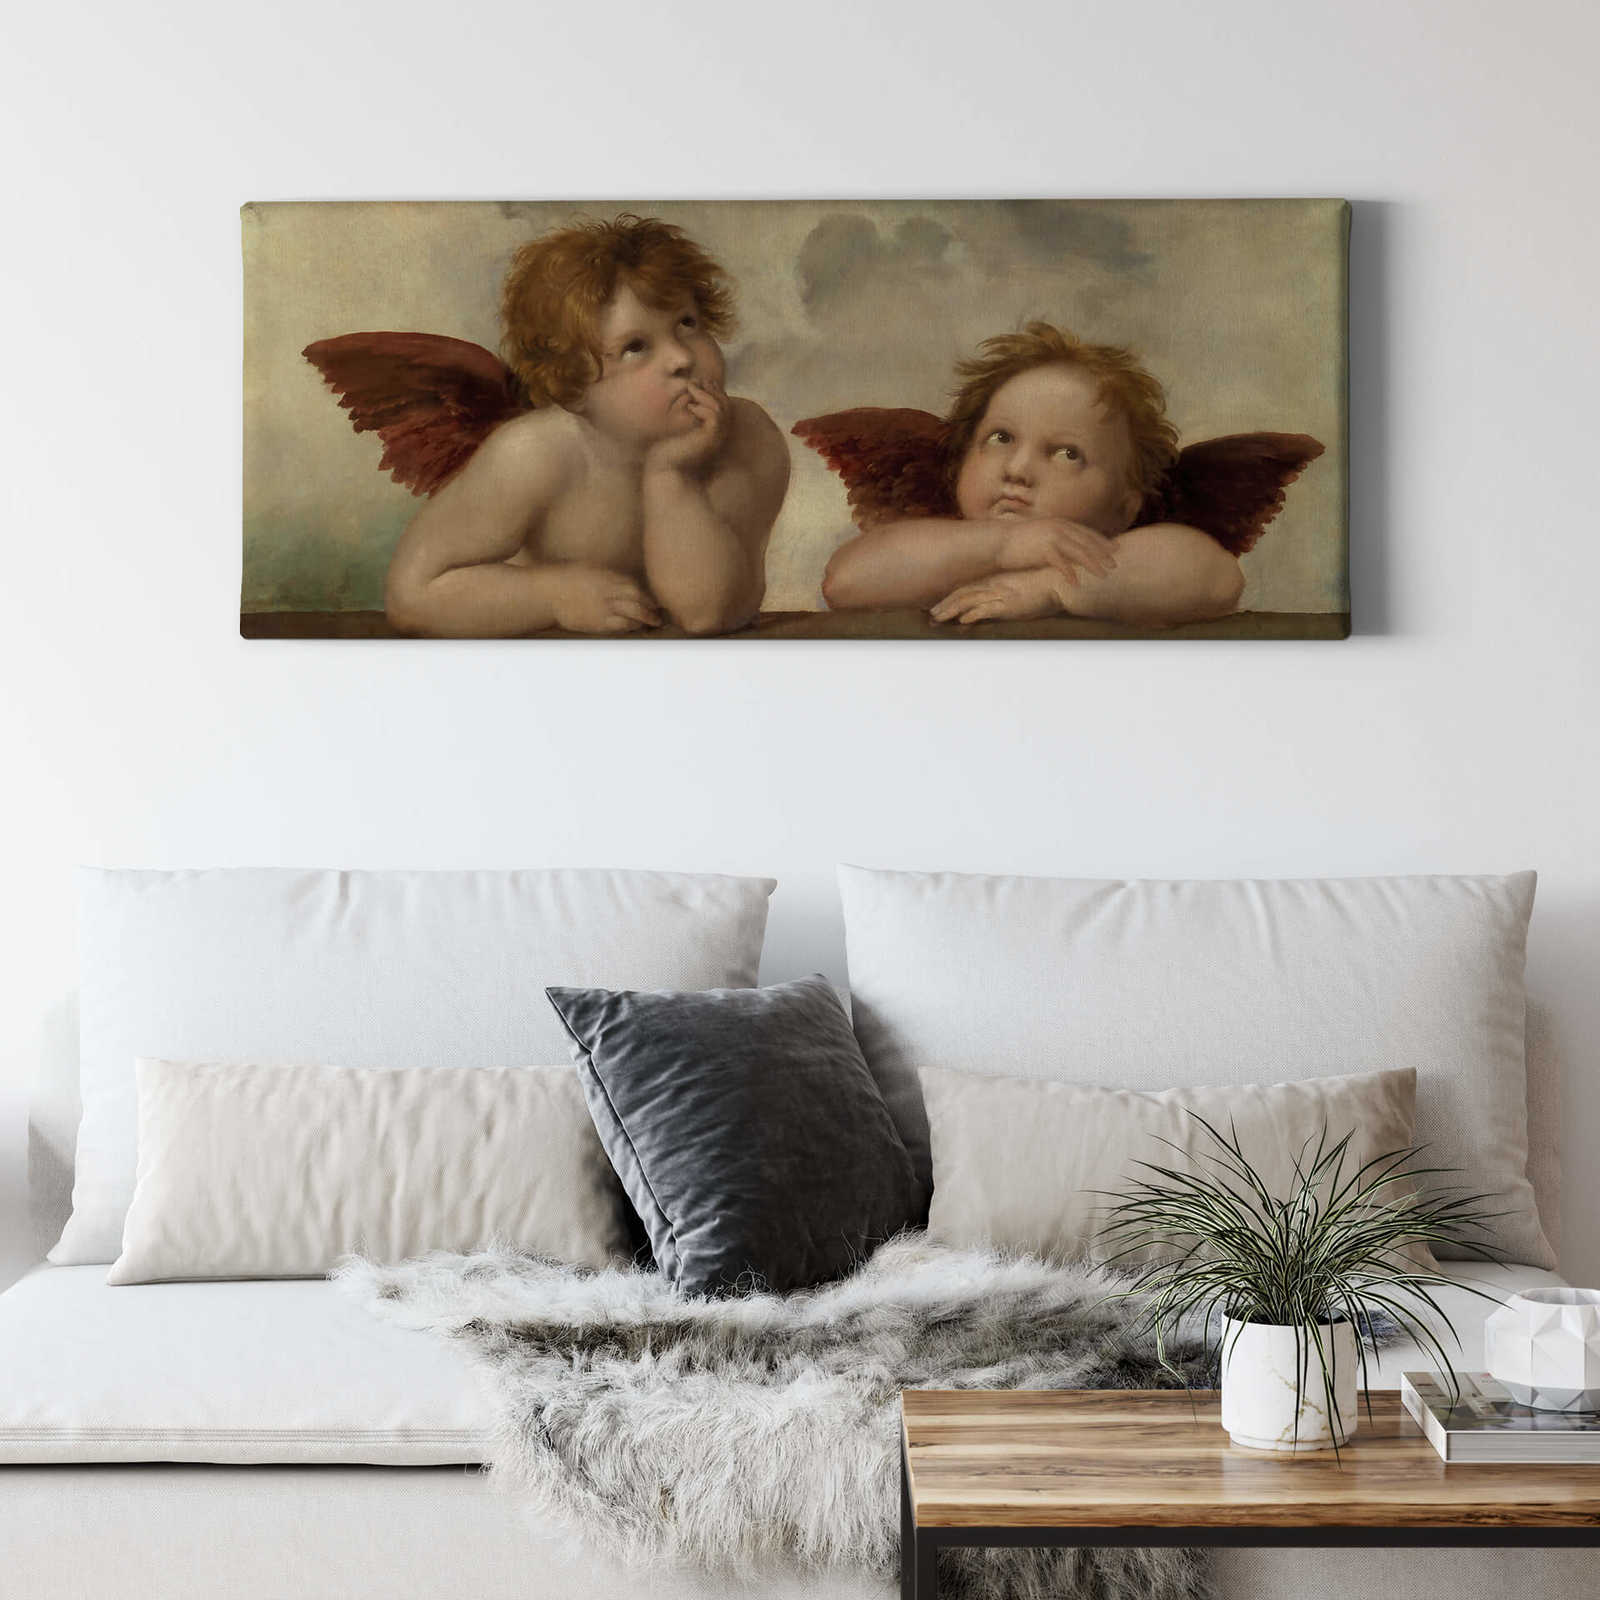             Panorama Leinwandbild zwei Engel von Raffael – 1,00 m x 0,40 m
        